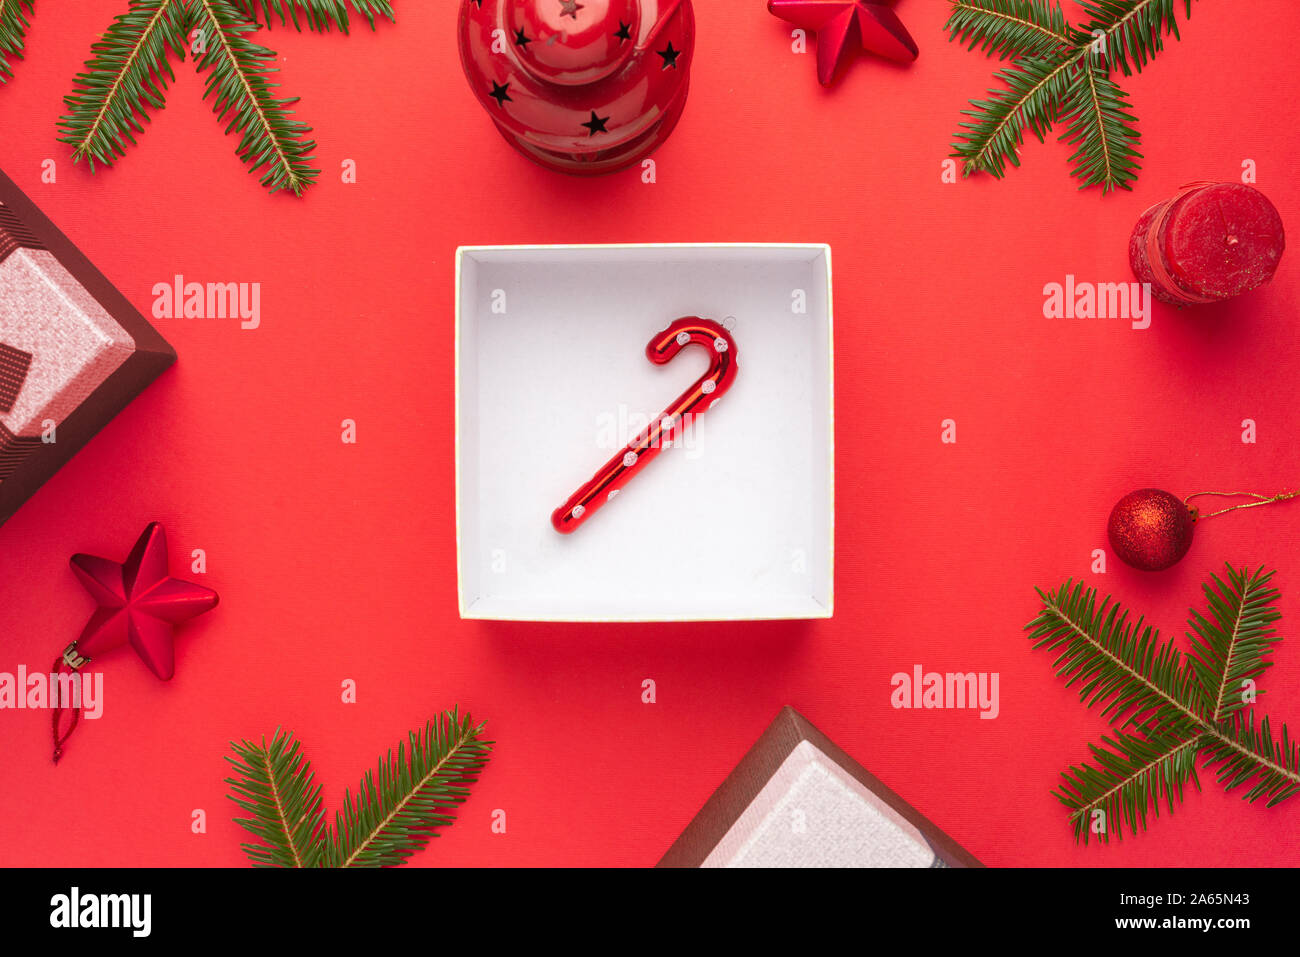 Lollipop en caja de regalo rodeado de adornos navideños en superficie roja. Sentar planas, vista superior. Foto de stock